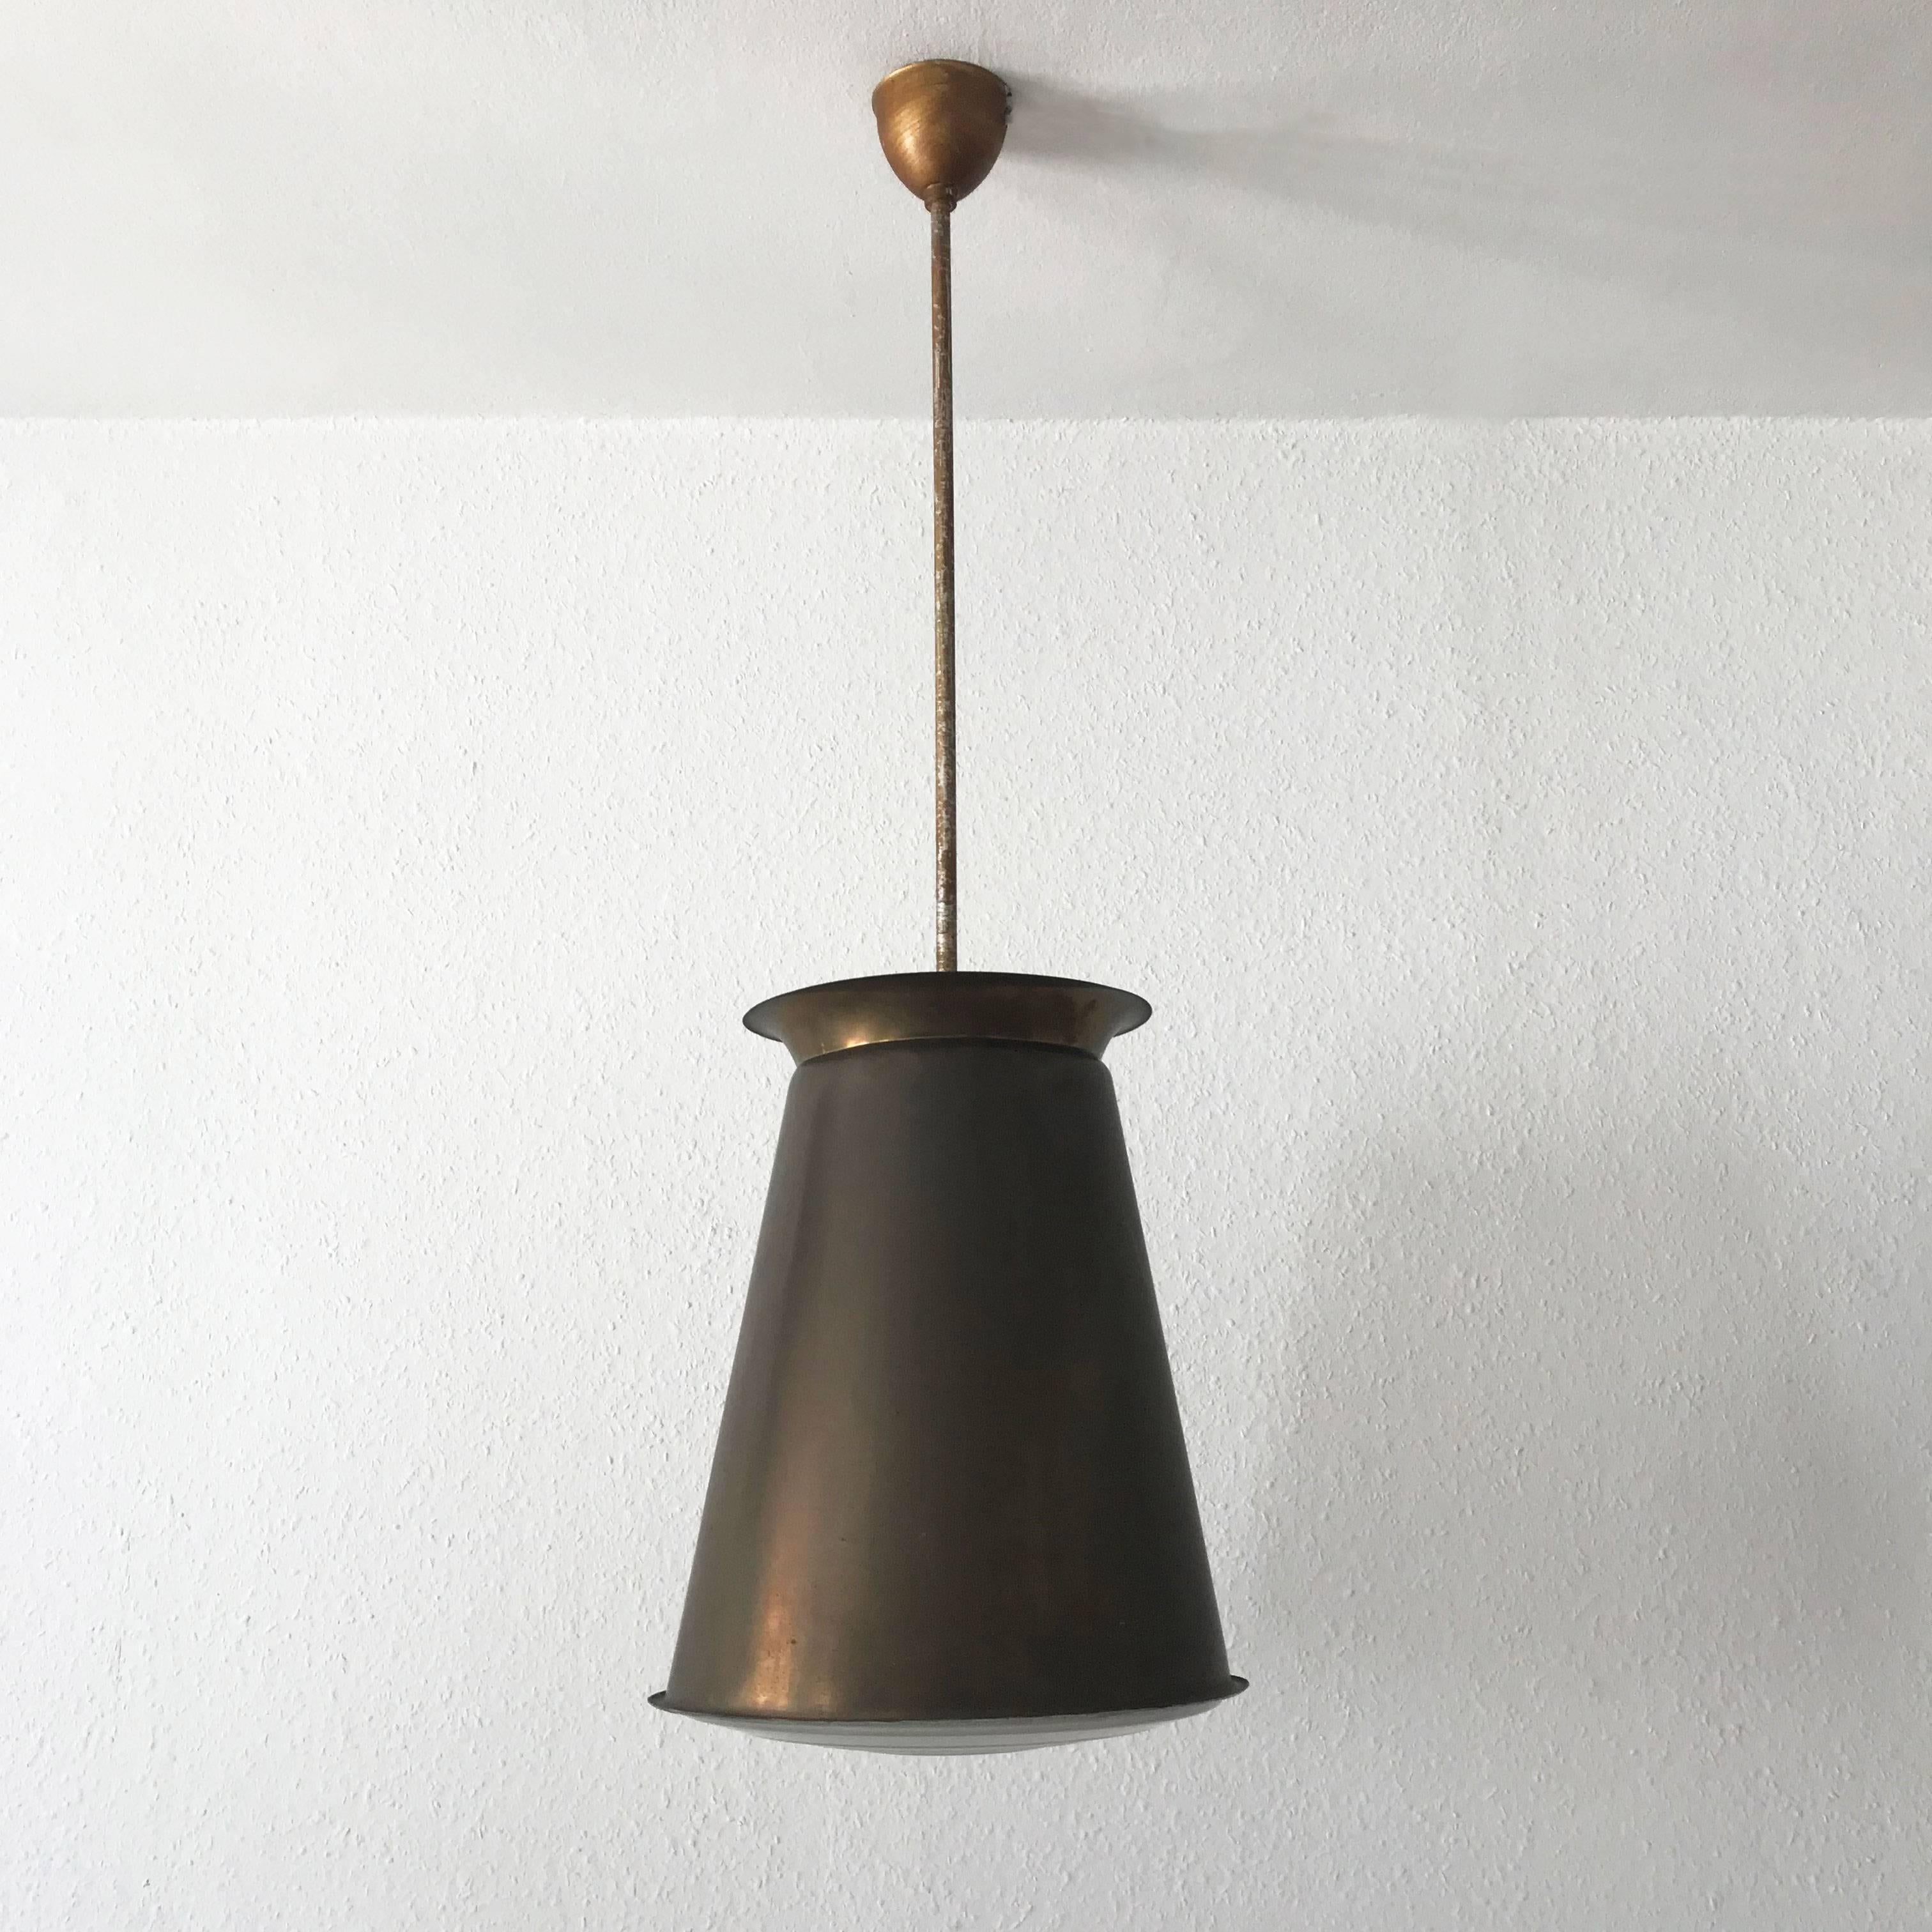 Lampes suspendues uniques de style Bauhaus ou moderniste. Conçue par Adolf Meyers dans les années 1920 et fabriquée par Zeiss Ikon, dans les années 1920-1930, en Allemagne.
Sur l'un des verres, la marque du fabricant est très visible : ZEISS IKON.